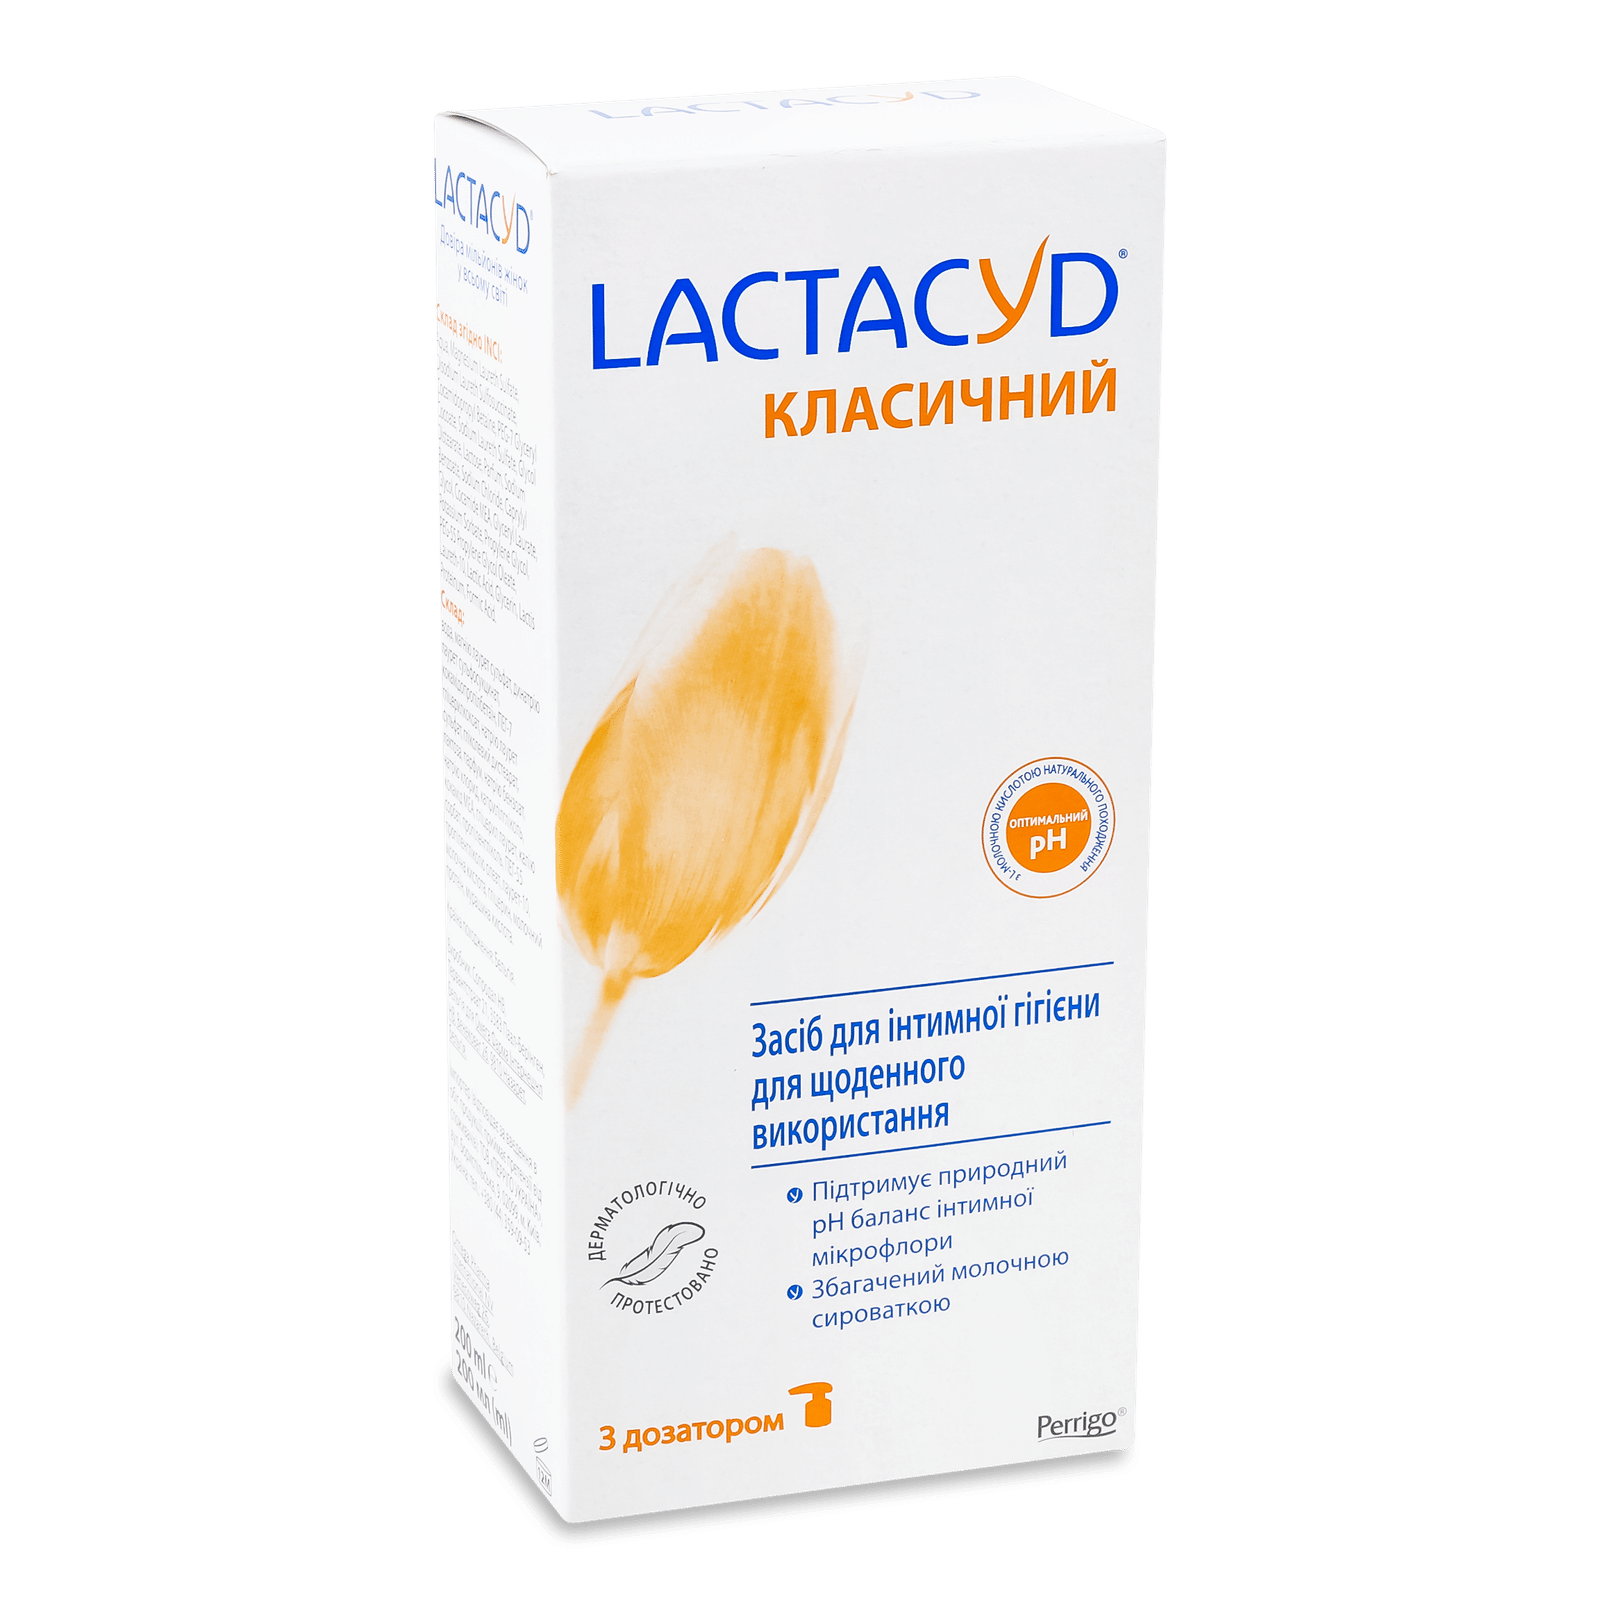 Засіб для інтимної гігієни Lactacyd «Класичний» з дозатором - 1